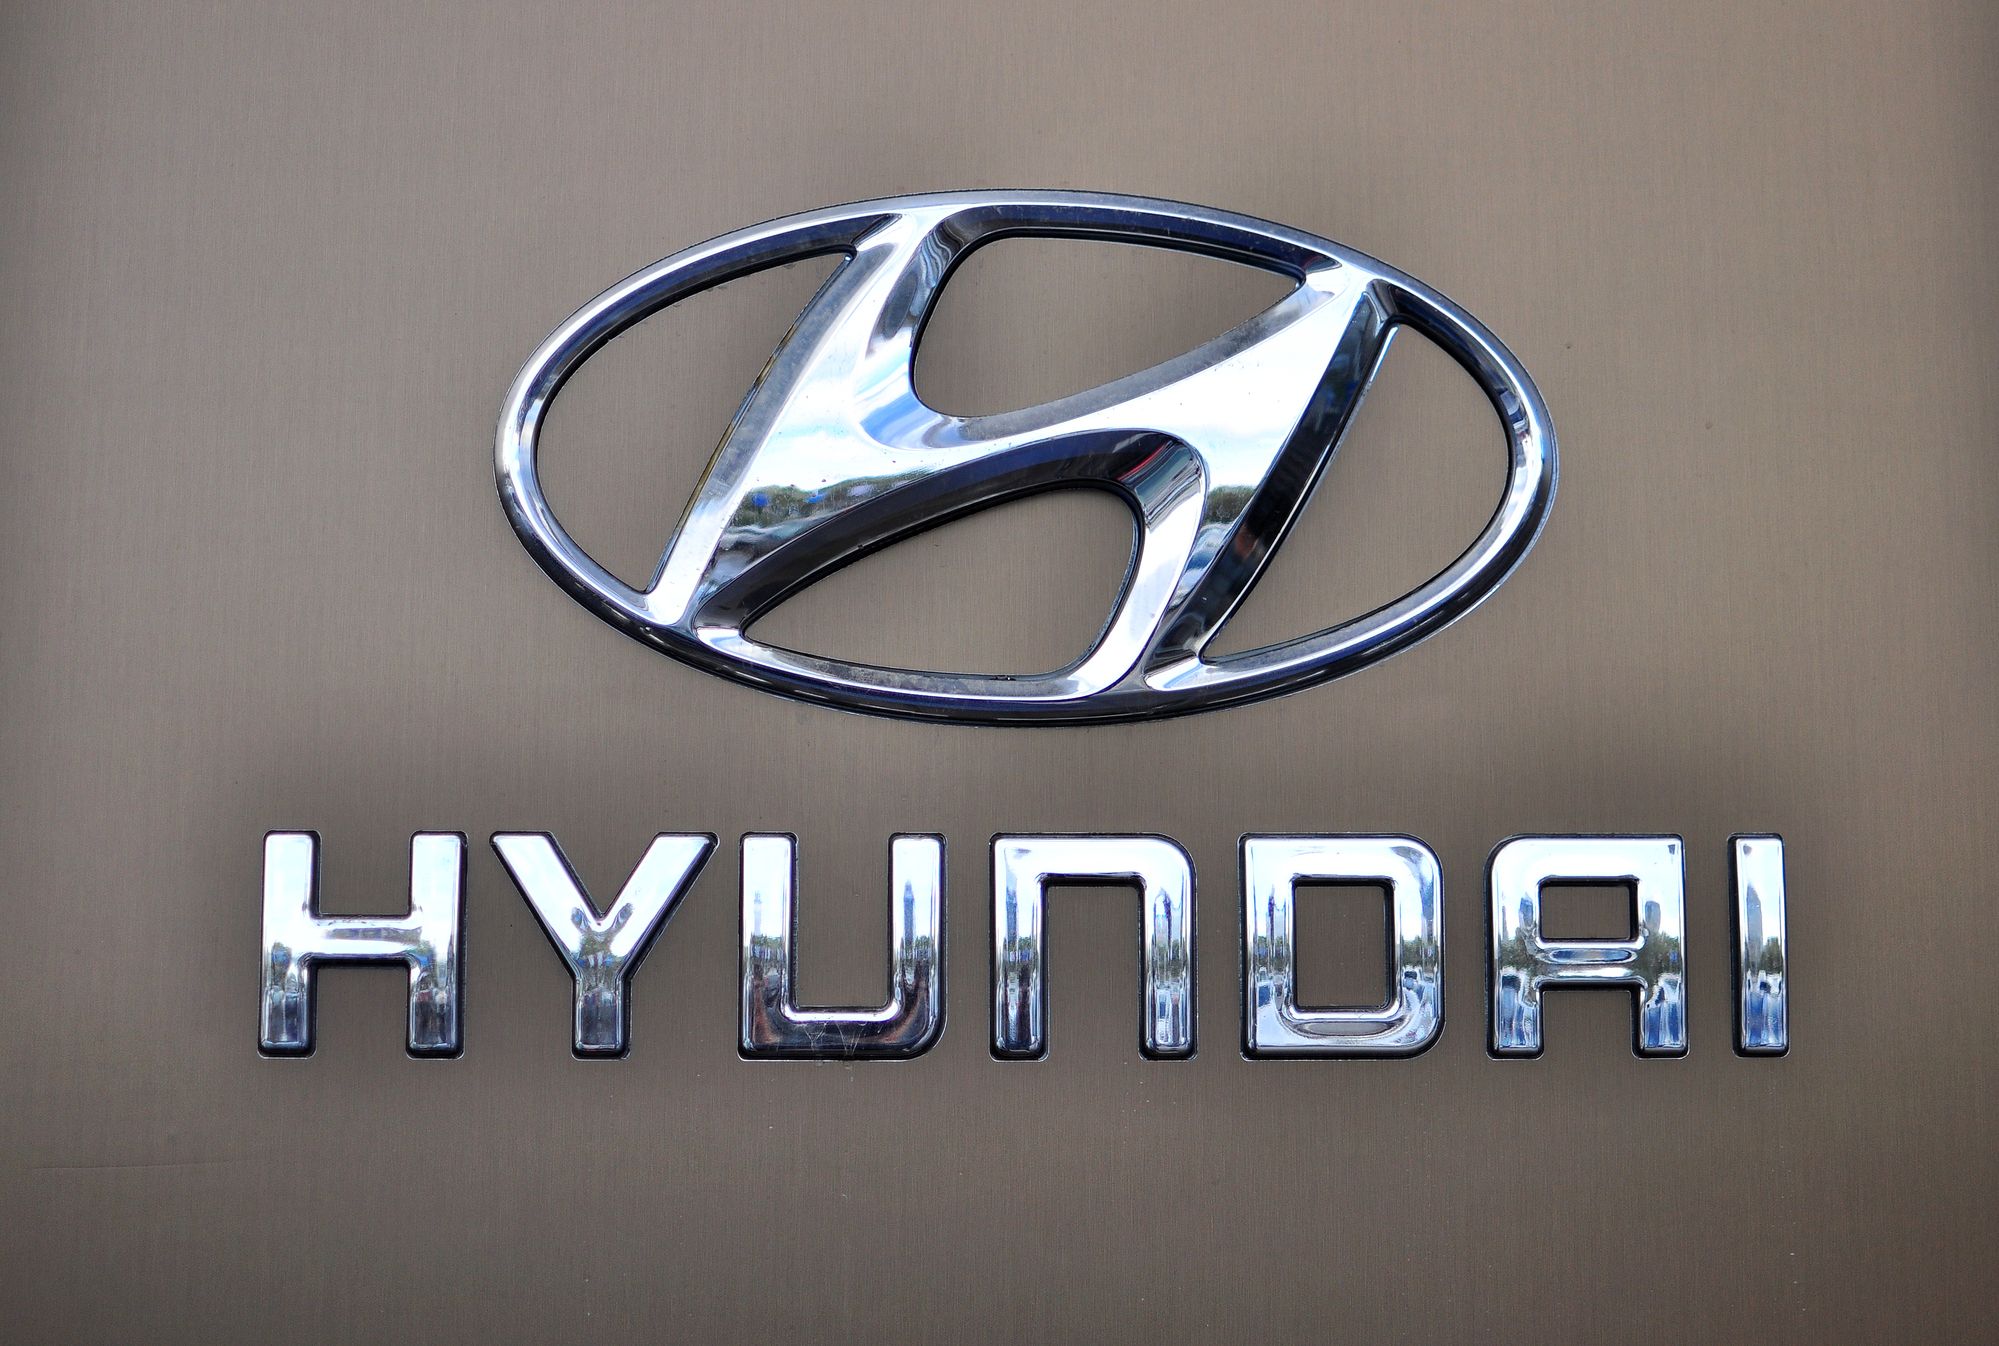 Logotype of Hyundai corporation on the grey background